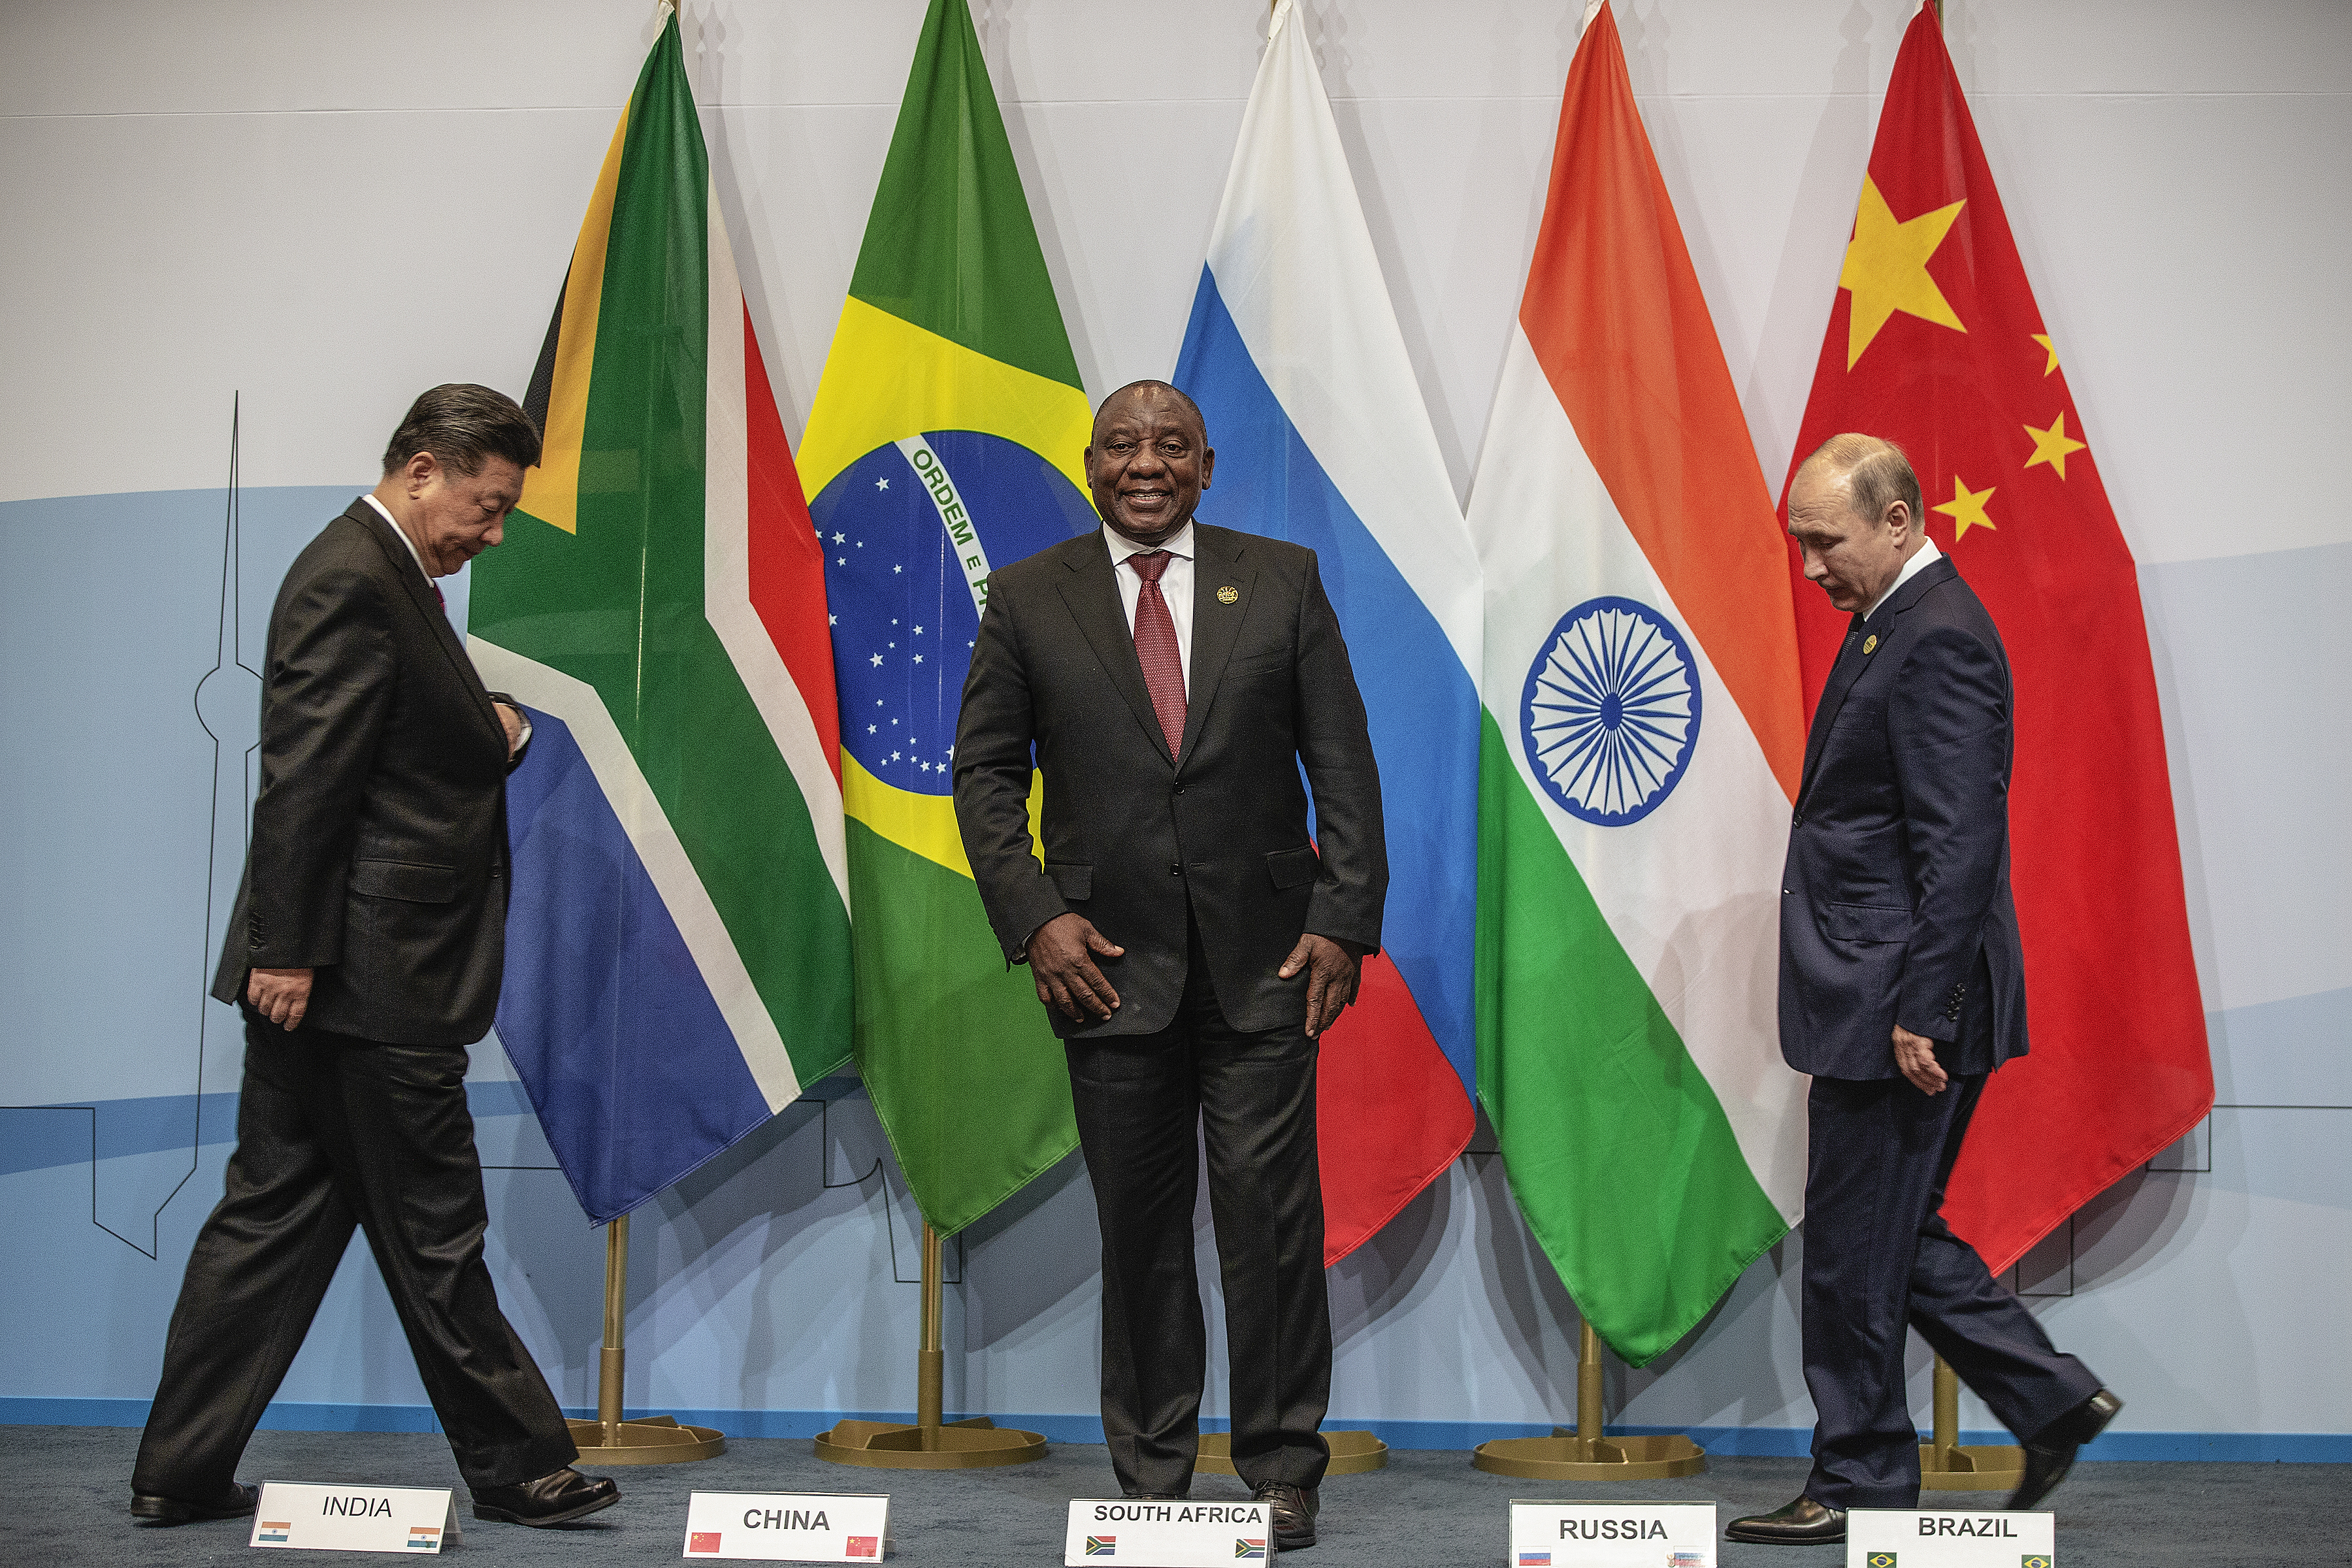 Der chinesische Präsident Xi Jinping (L), der südafrikanische Präsident Cyril Ramaphosa (C) und der russische Präsident Valdimir Putin